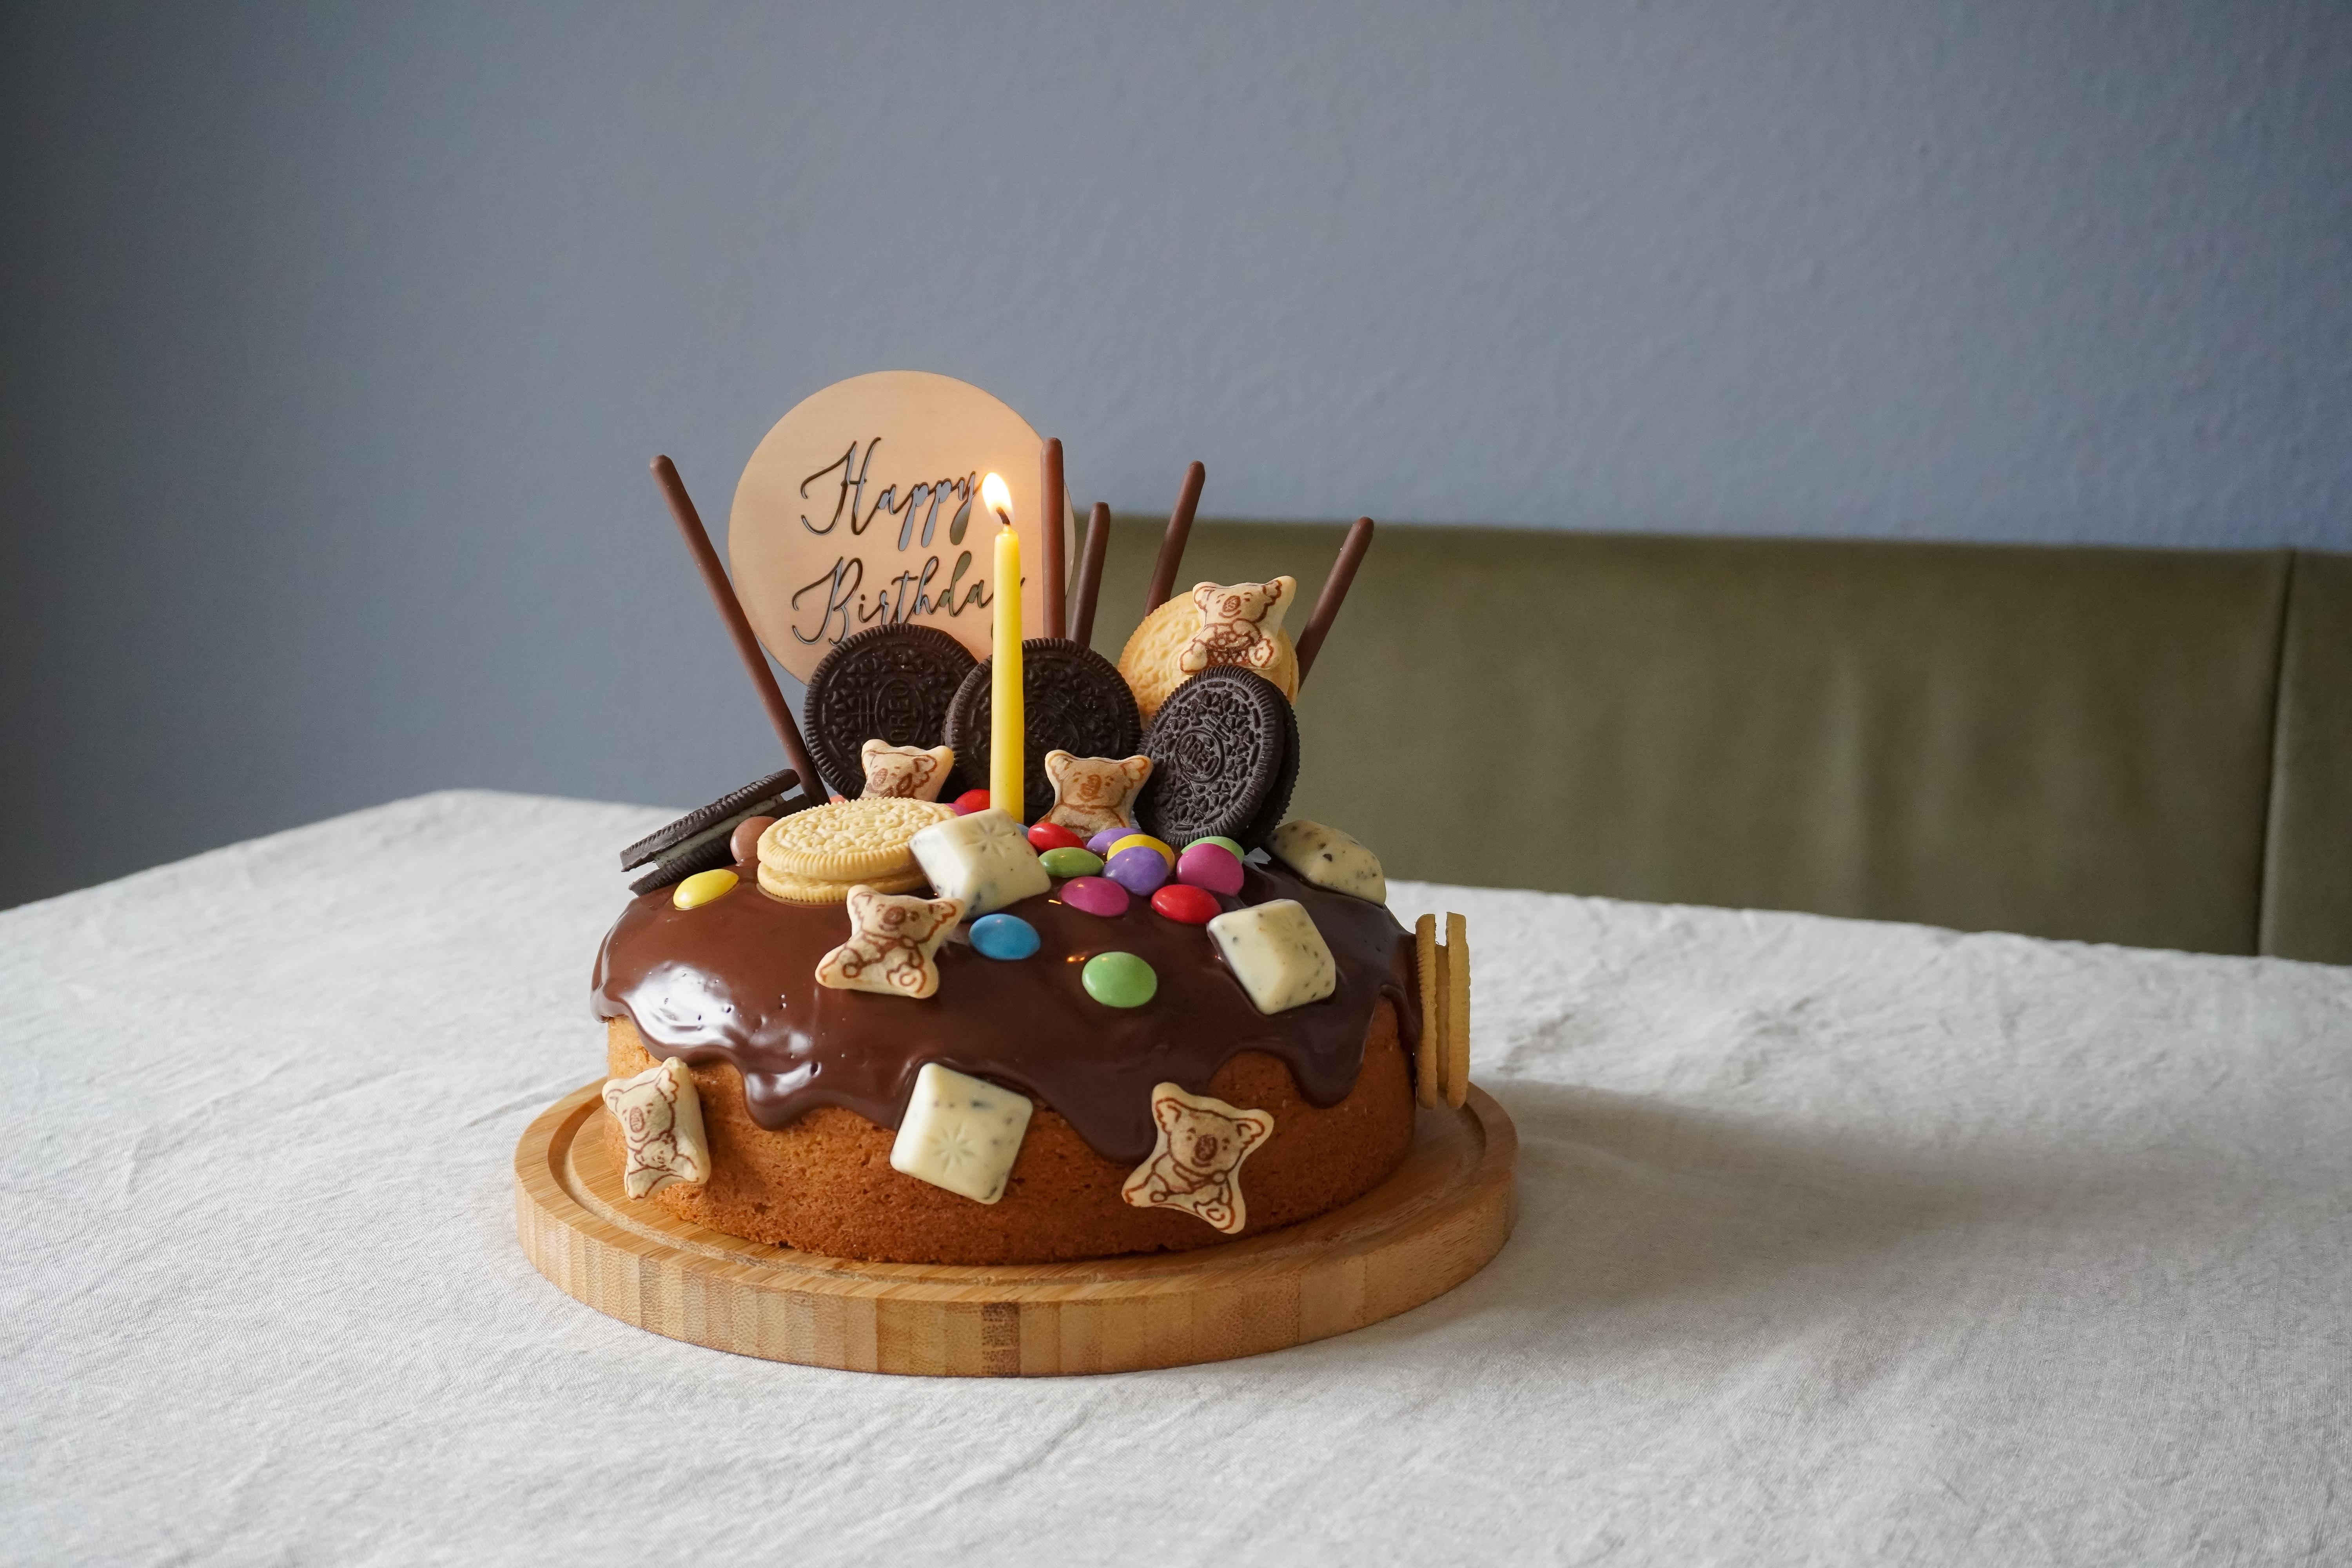 6 Jahre! Hoch sollst du leben! #geburtstagskind #happybirthday #kuchen #candycake #backen